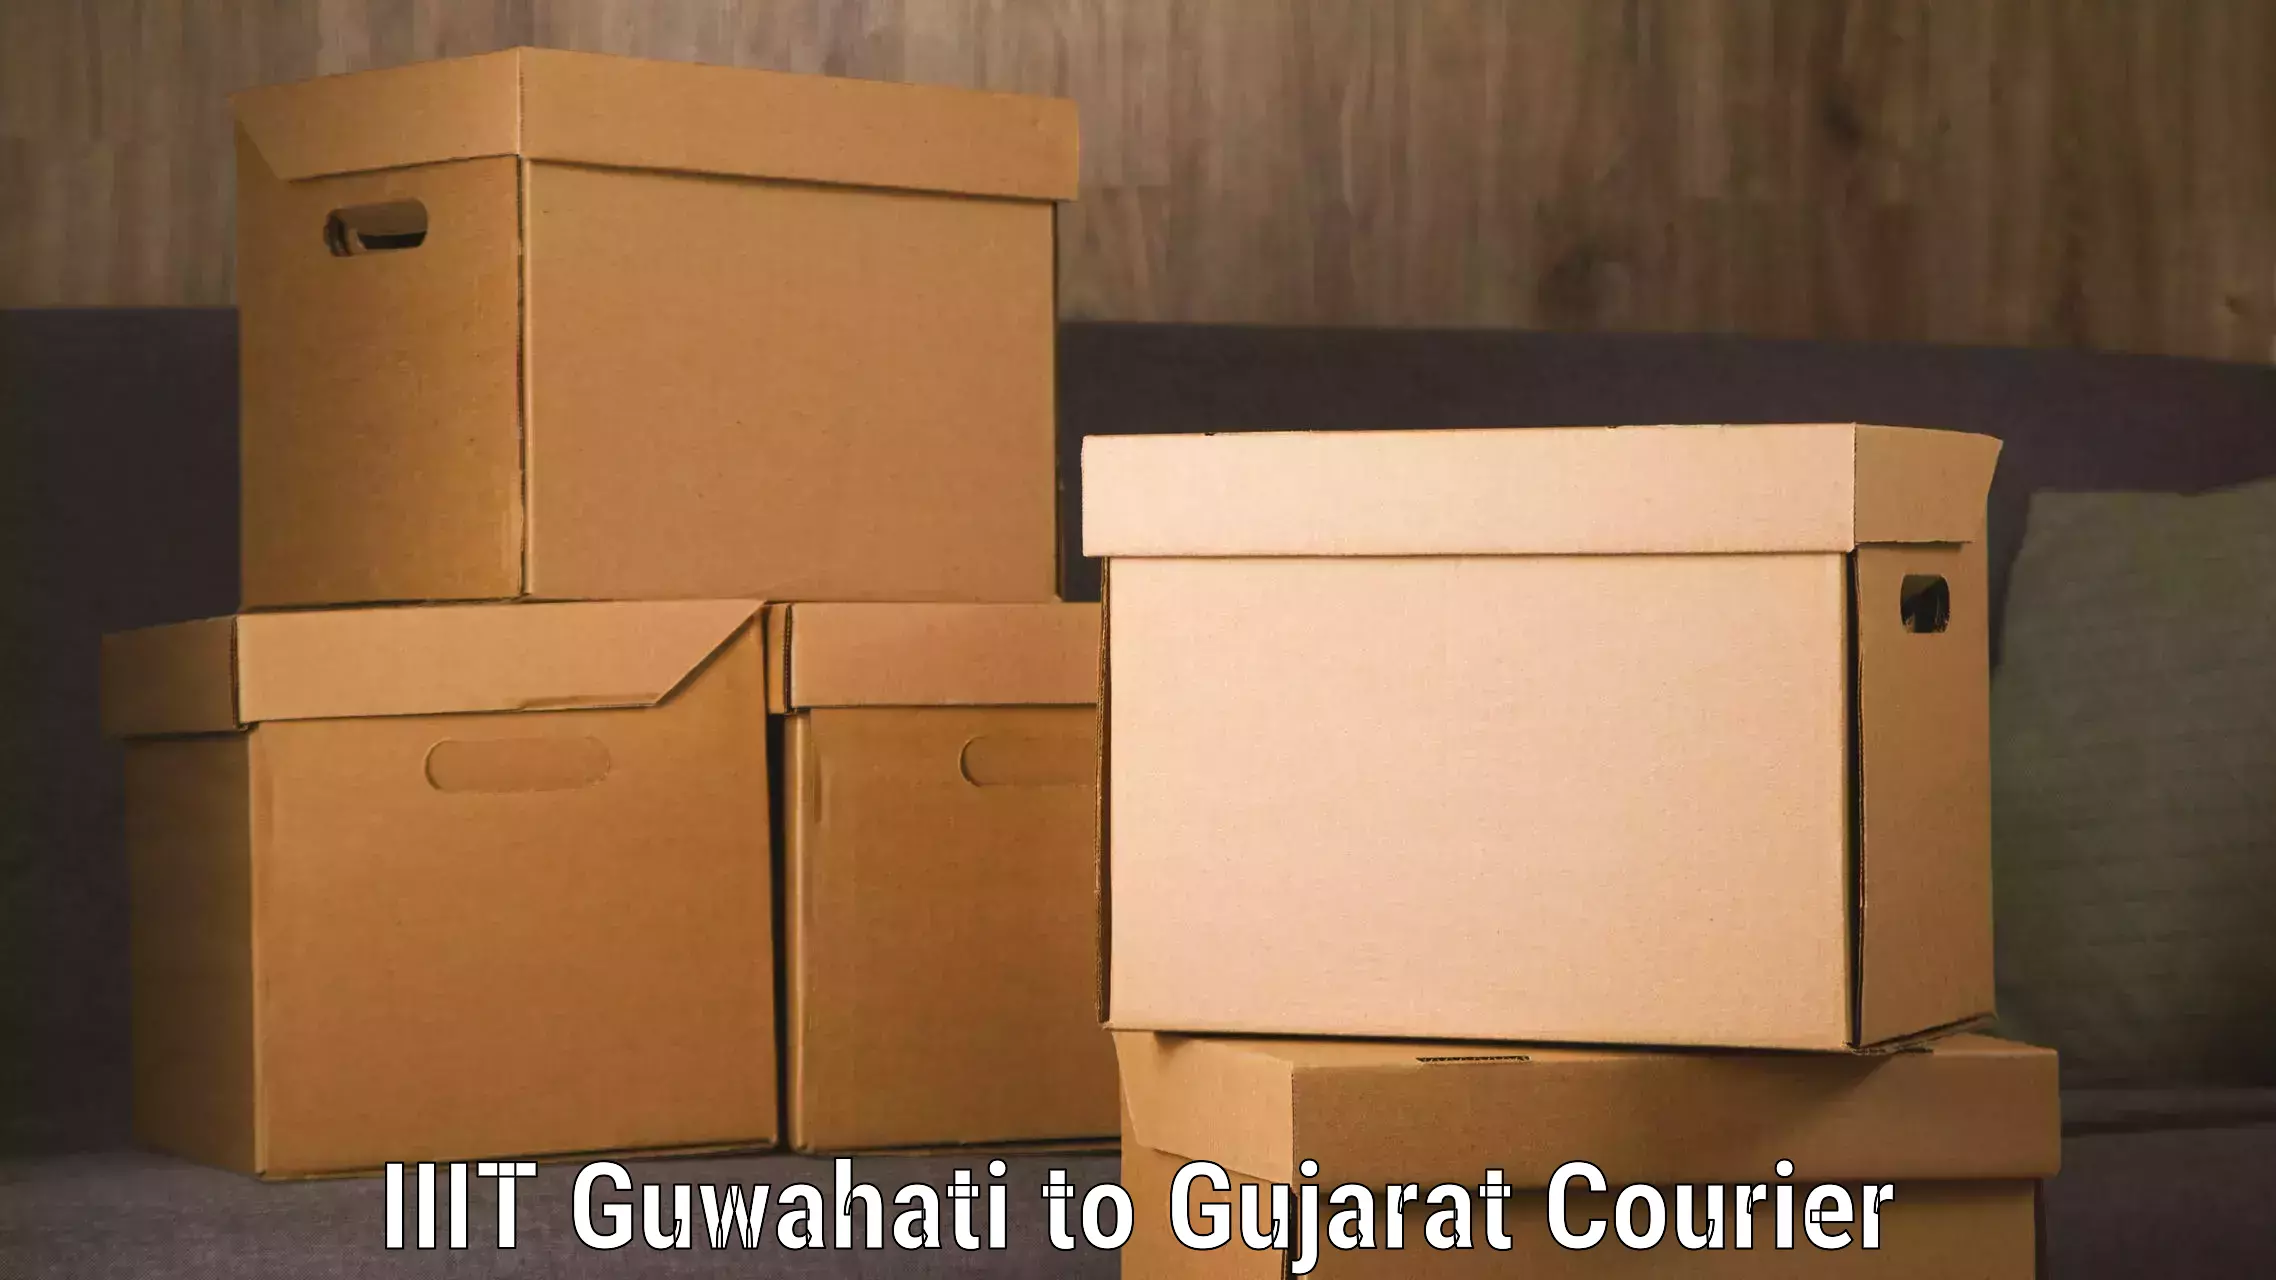 Luggage shipment processing in IIIT Guwahati to Gujarat